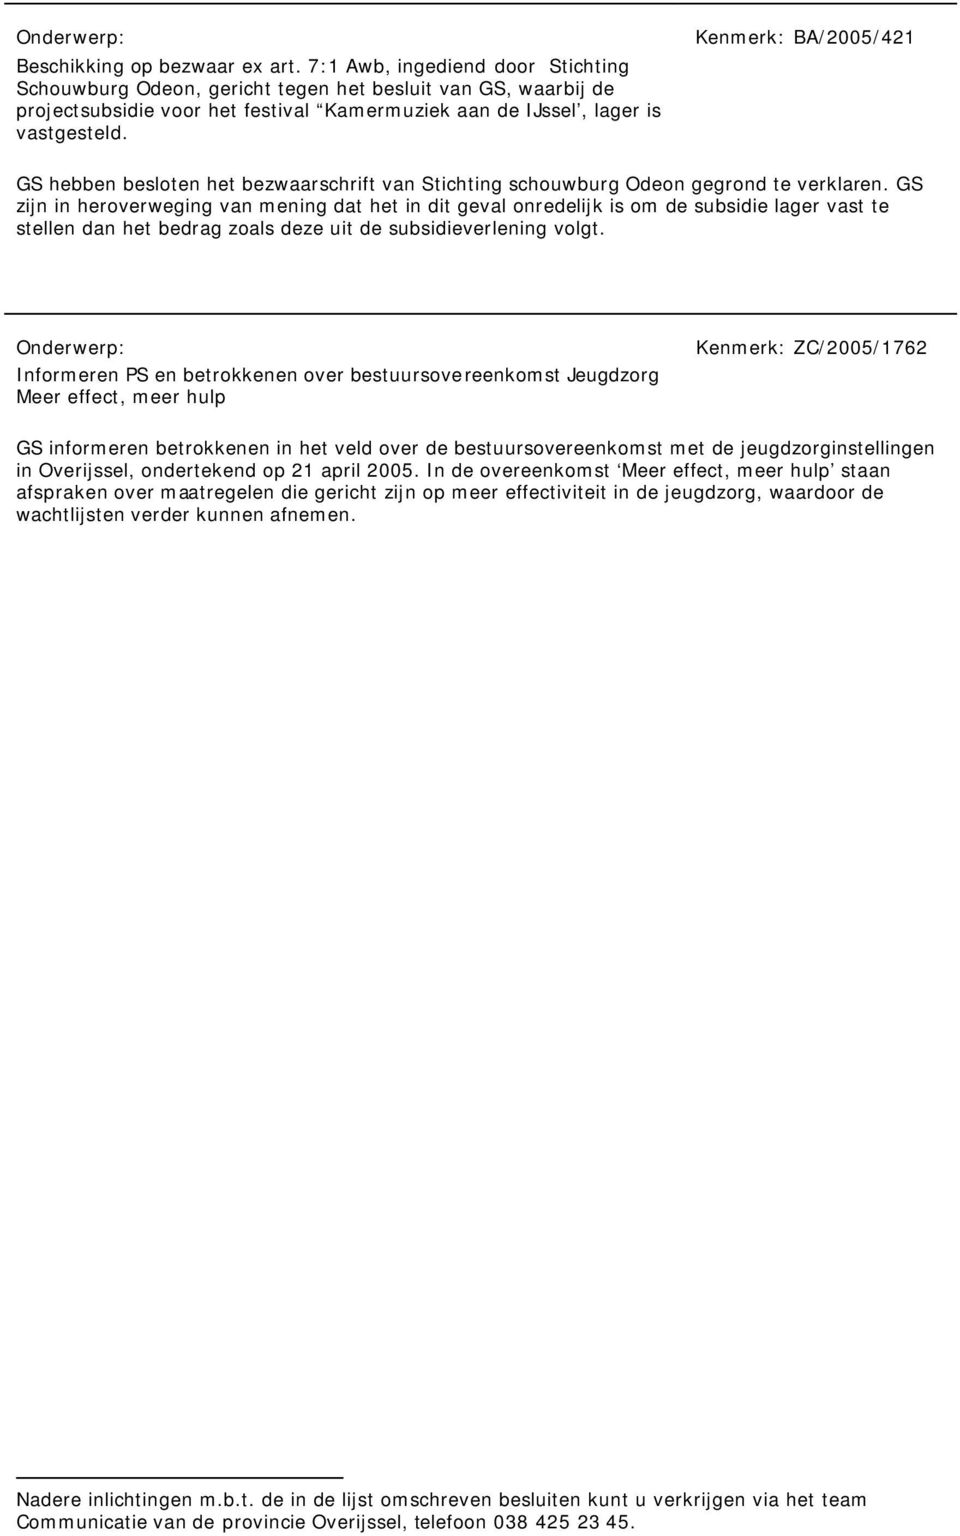 Kenmerk: BA/2005/421 GS hebben besloten het bezwaarschrift van Stichting schouwburg Odeon gegrond te verklaren.